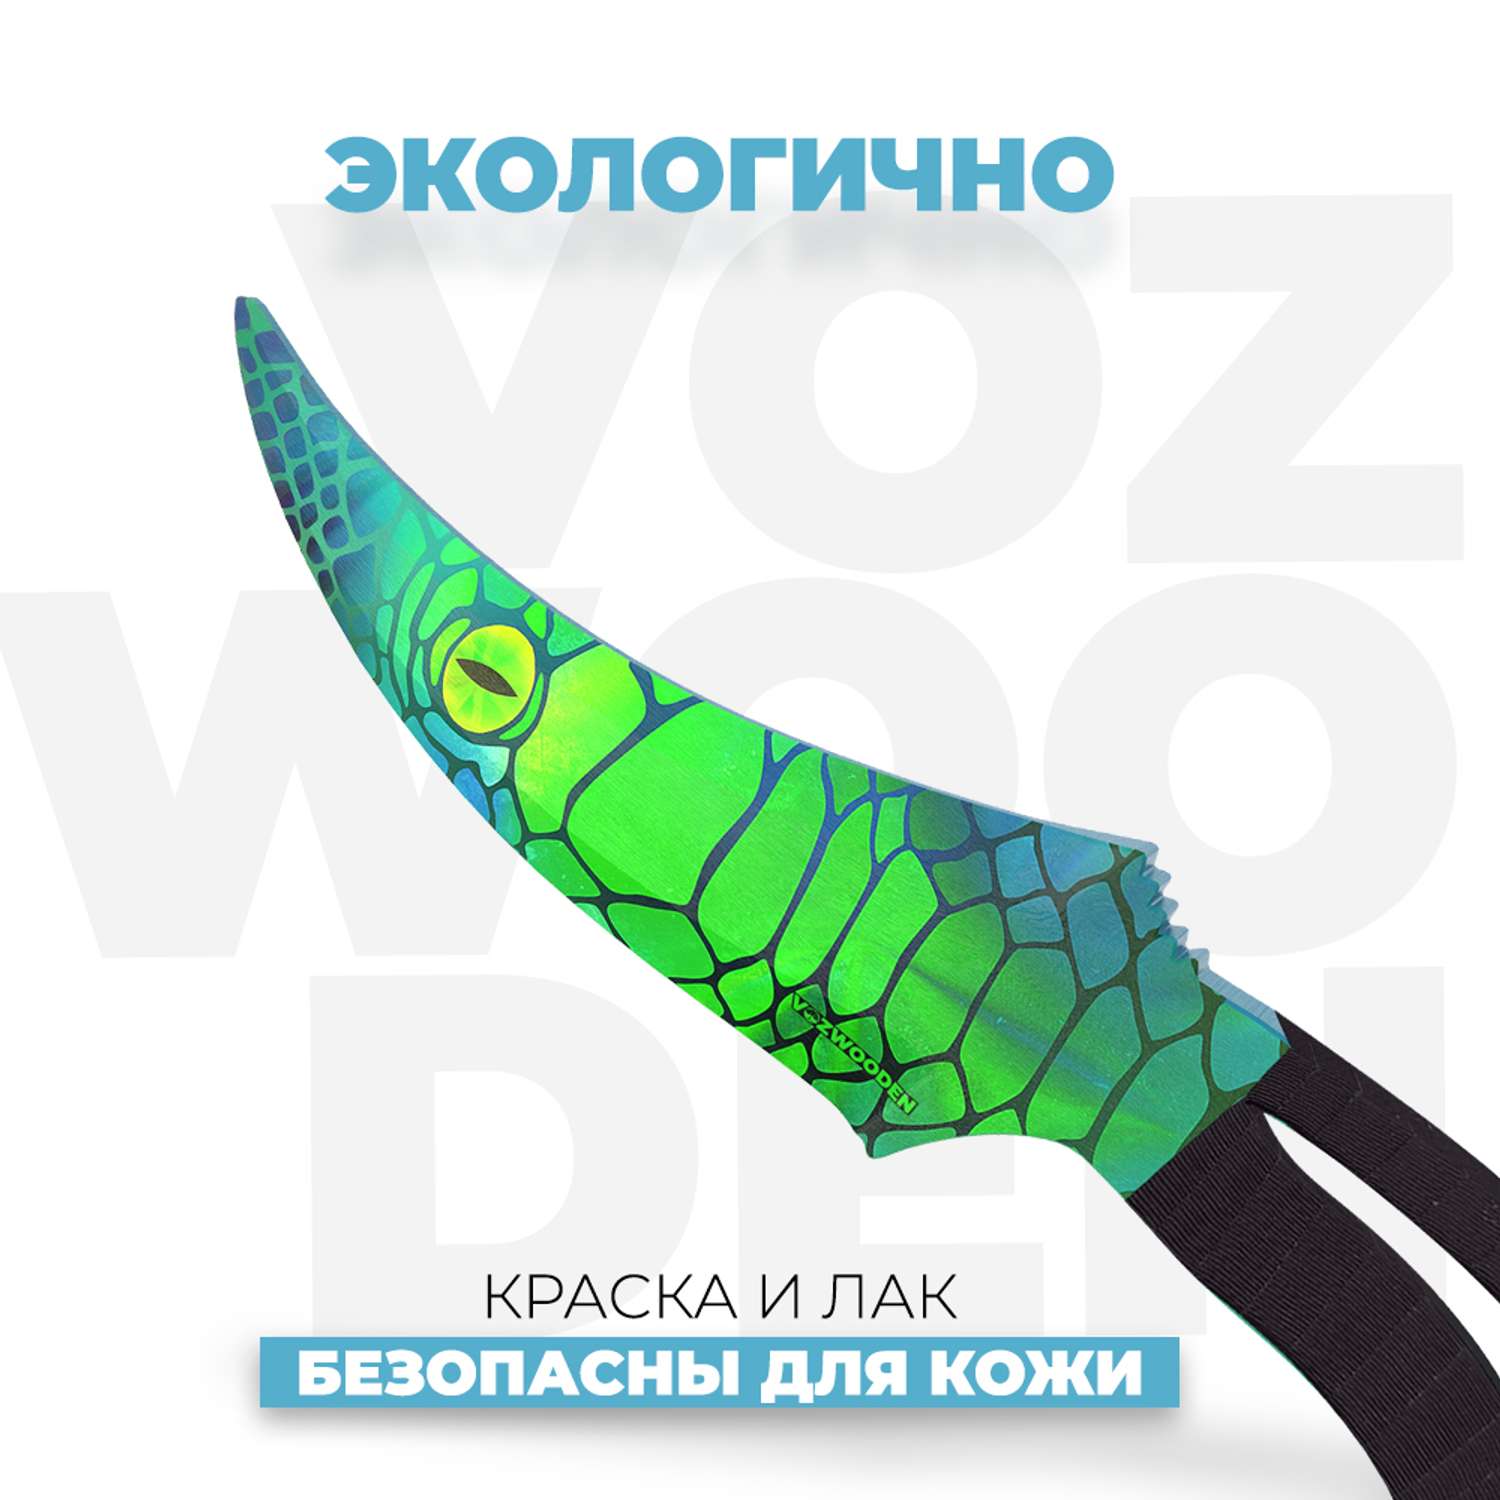 Деревянный нож VozWooden Фанг Сапфира Стандофф 2 - фото 4